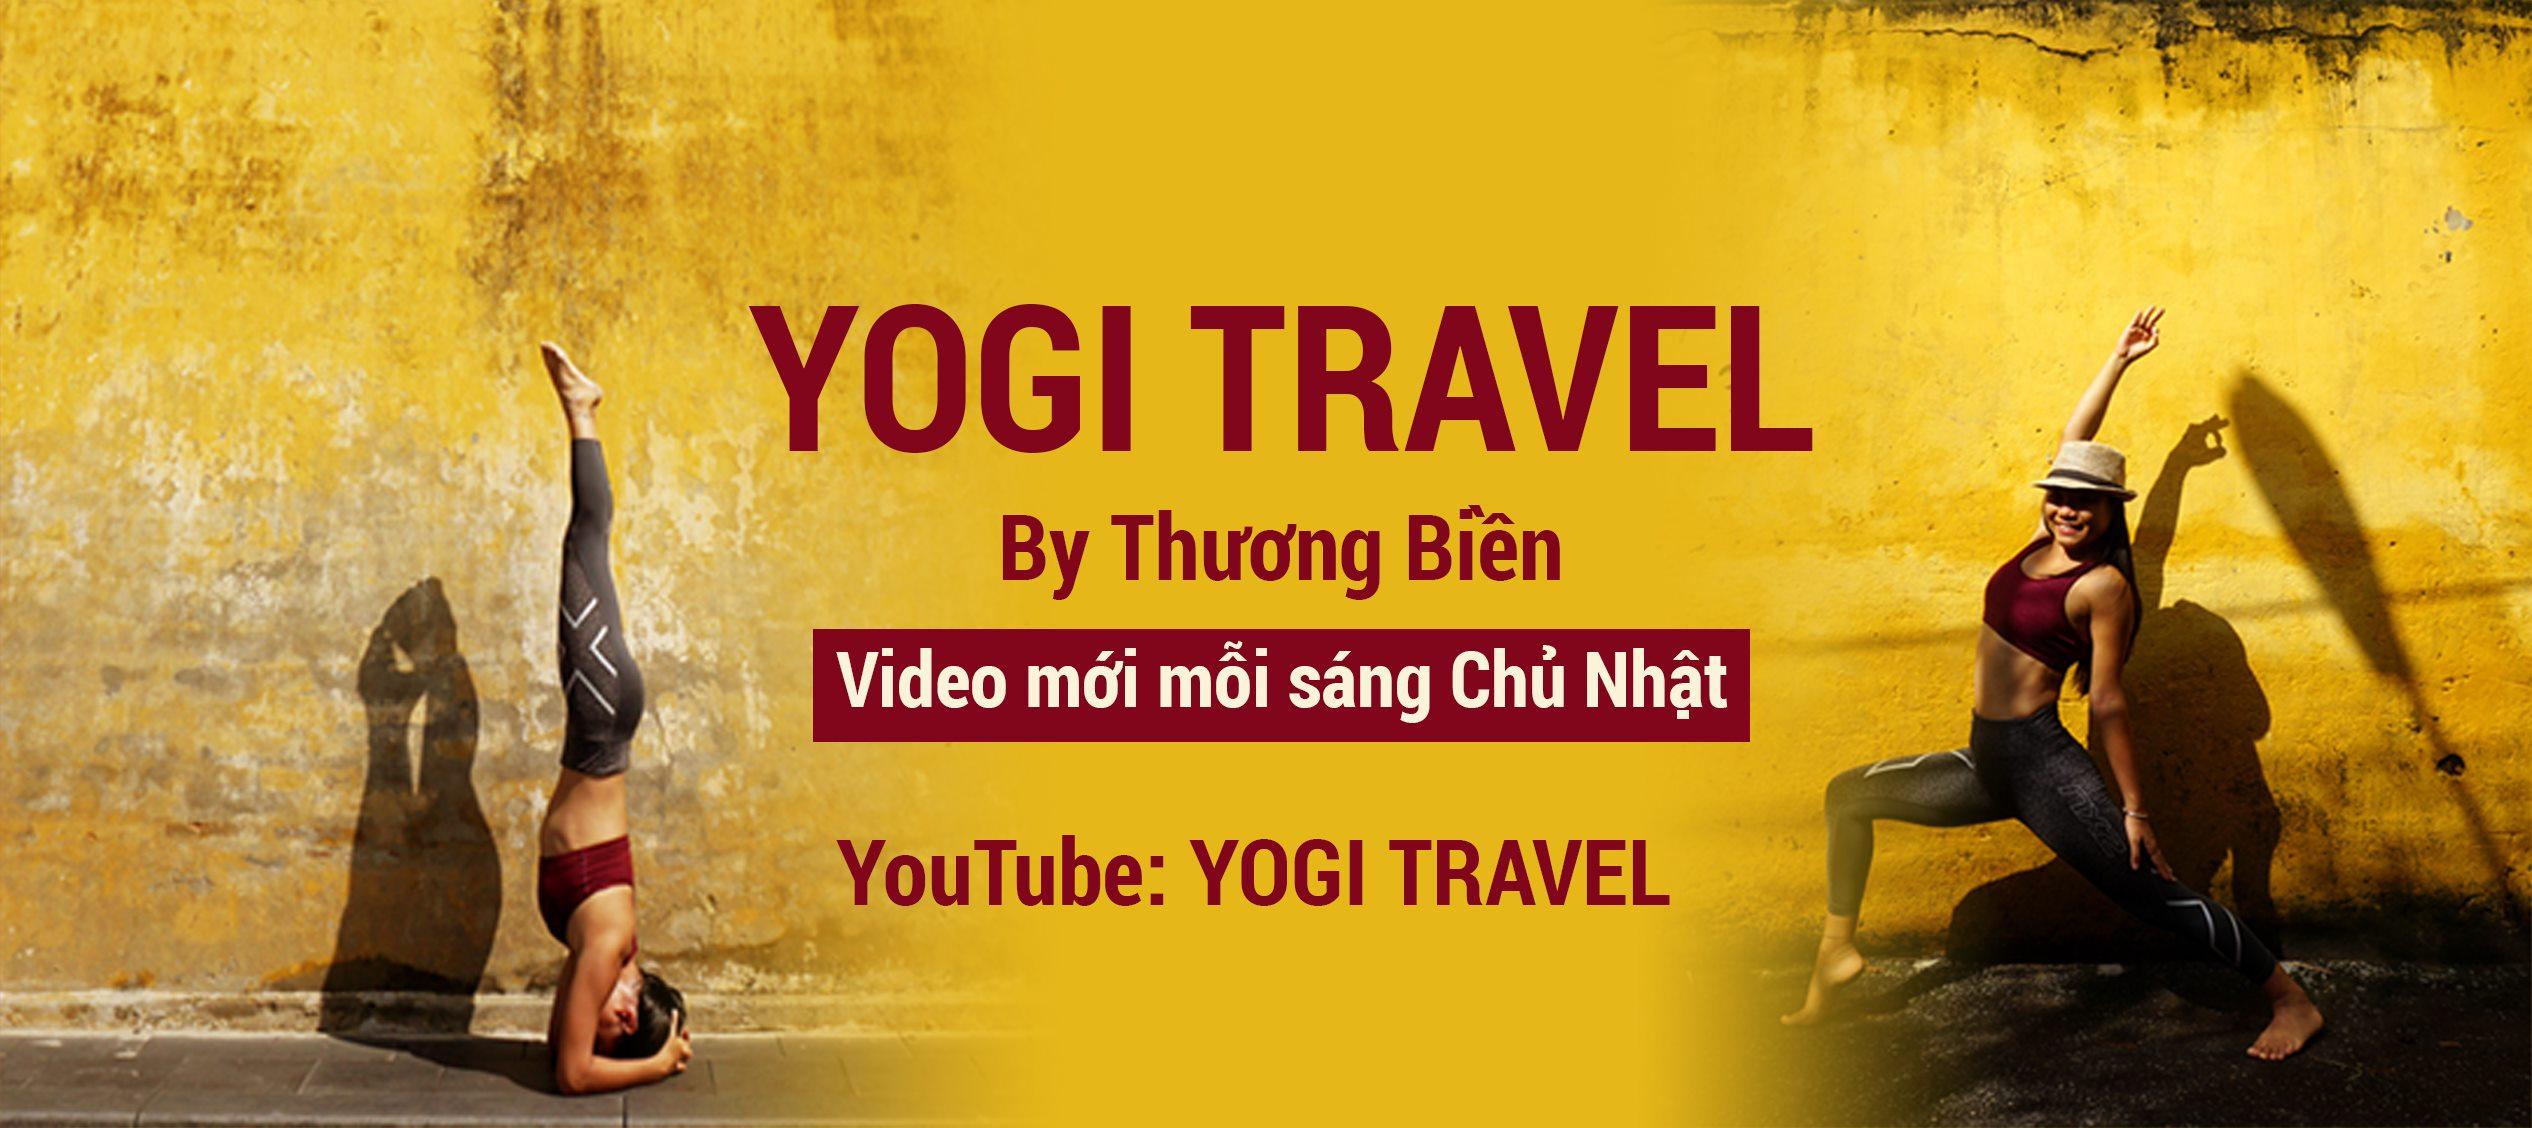 Kênh YouTube "Yogi Travel" do Thương Điền quản lý. (nguồn: Internet)